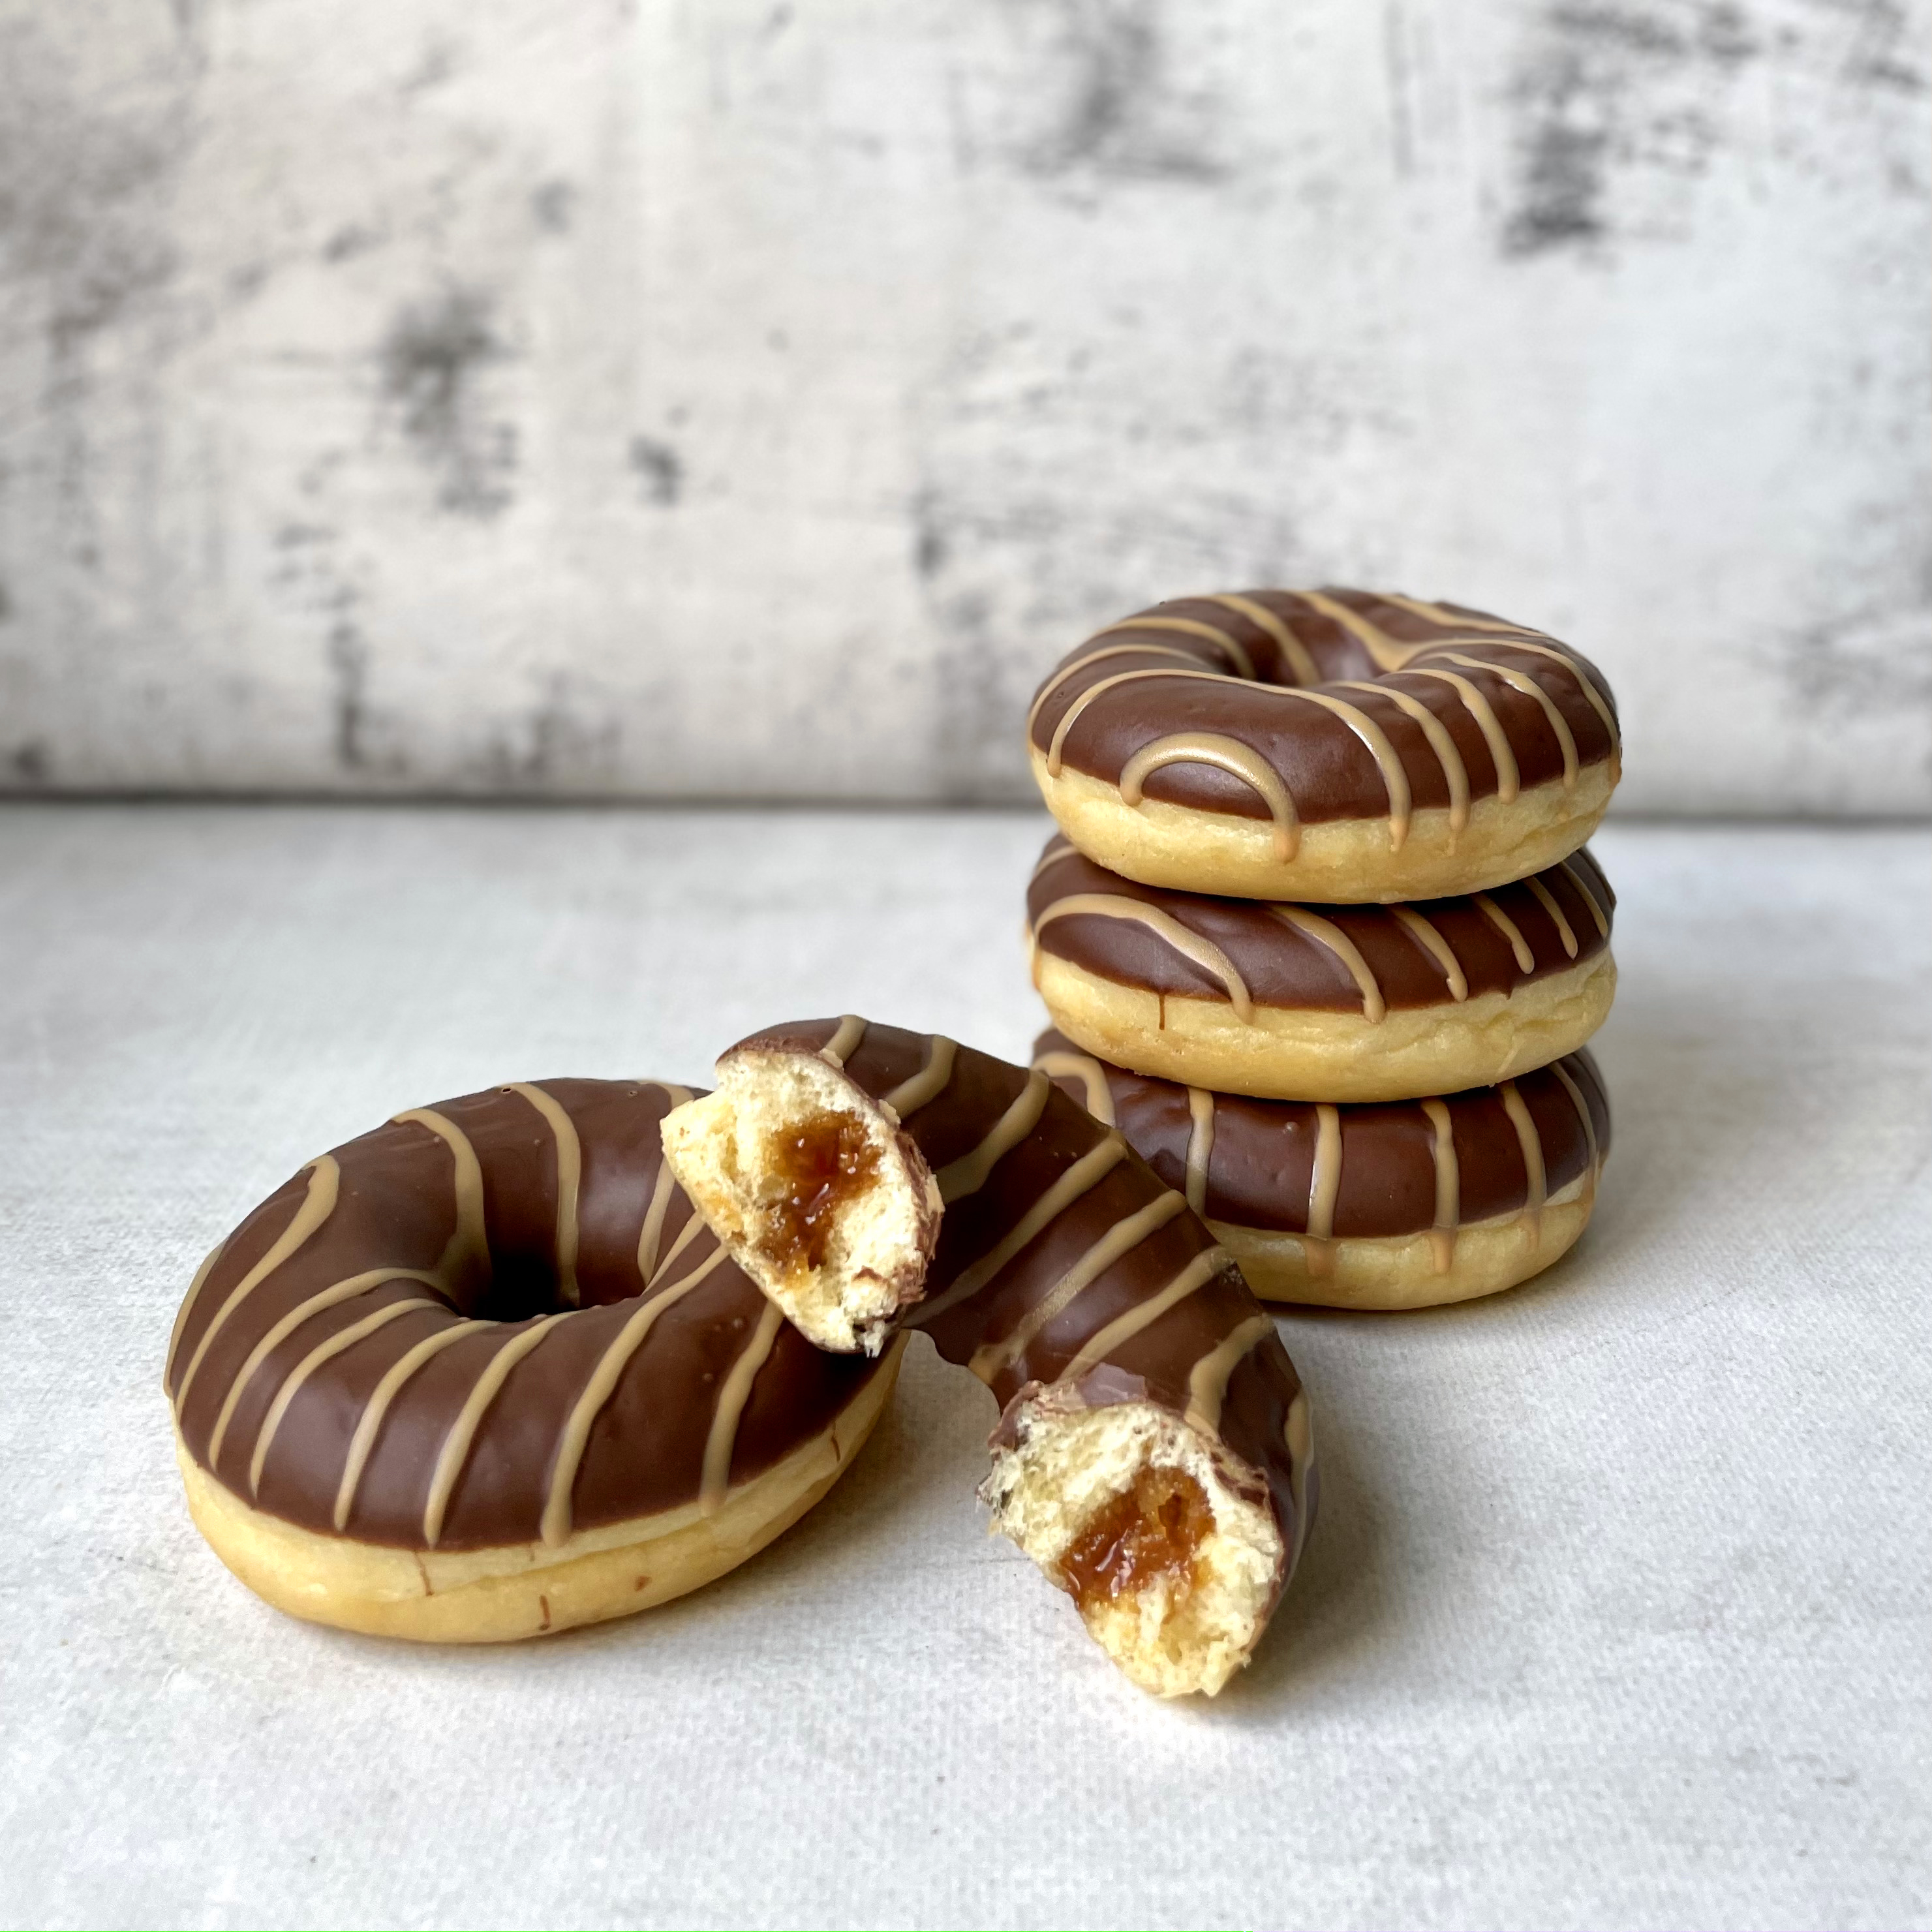 Пончик с карамельной начинкой и шоколадной кондитерской глазурью изображение 1